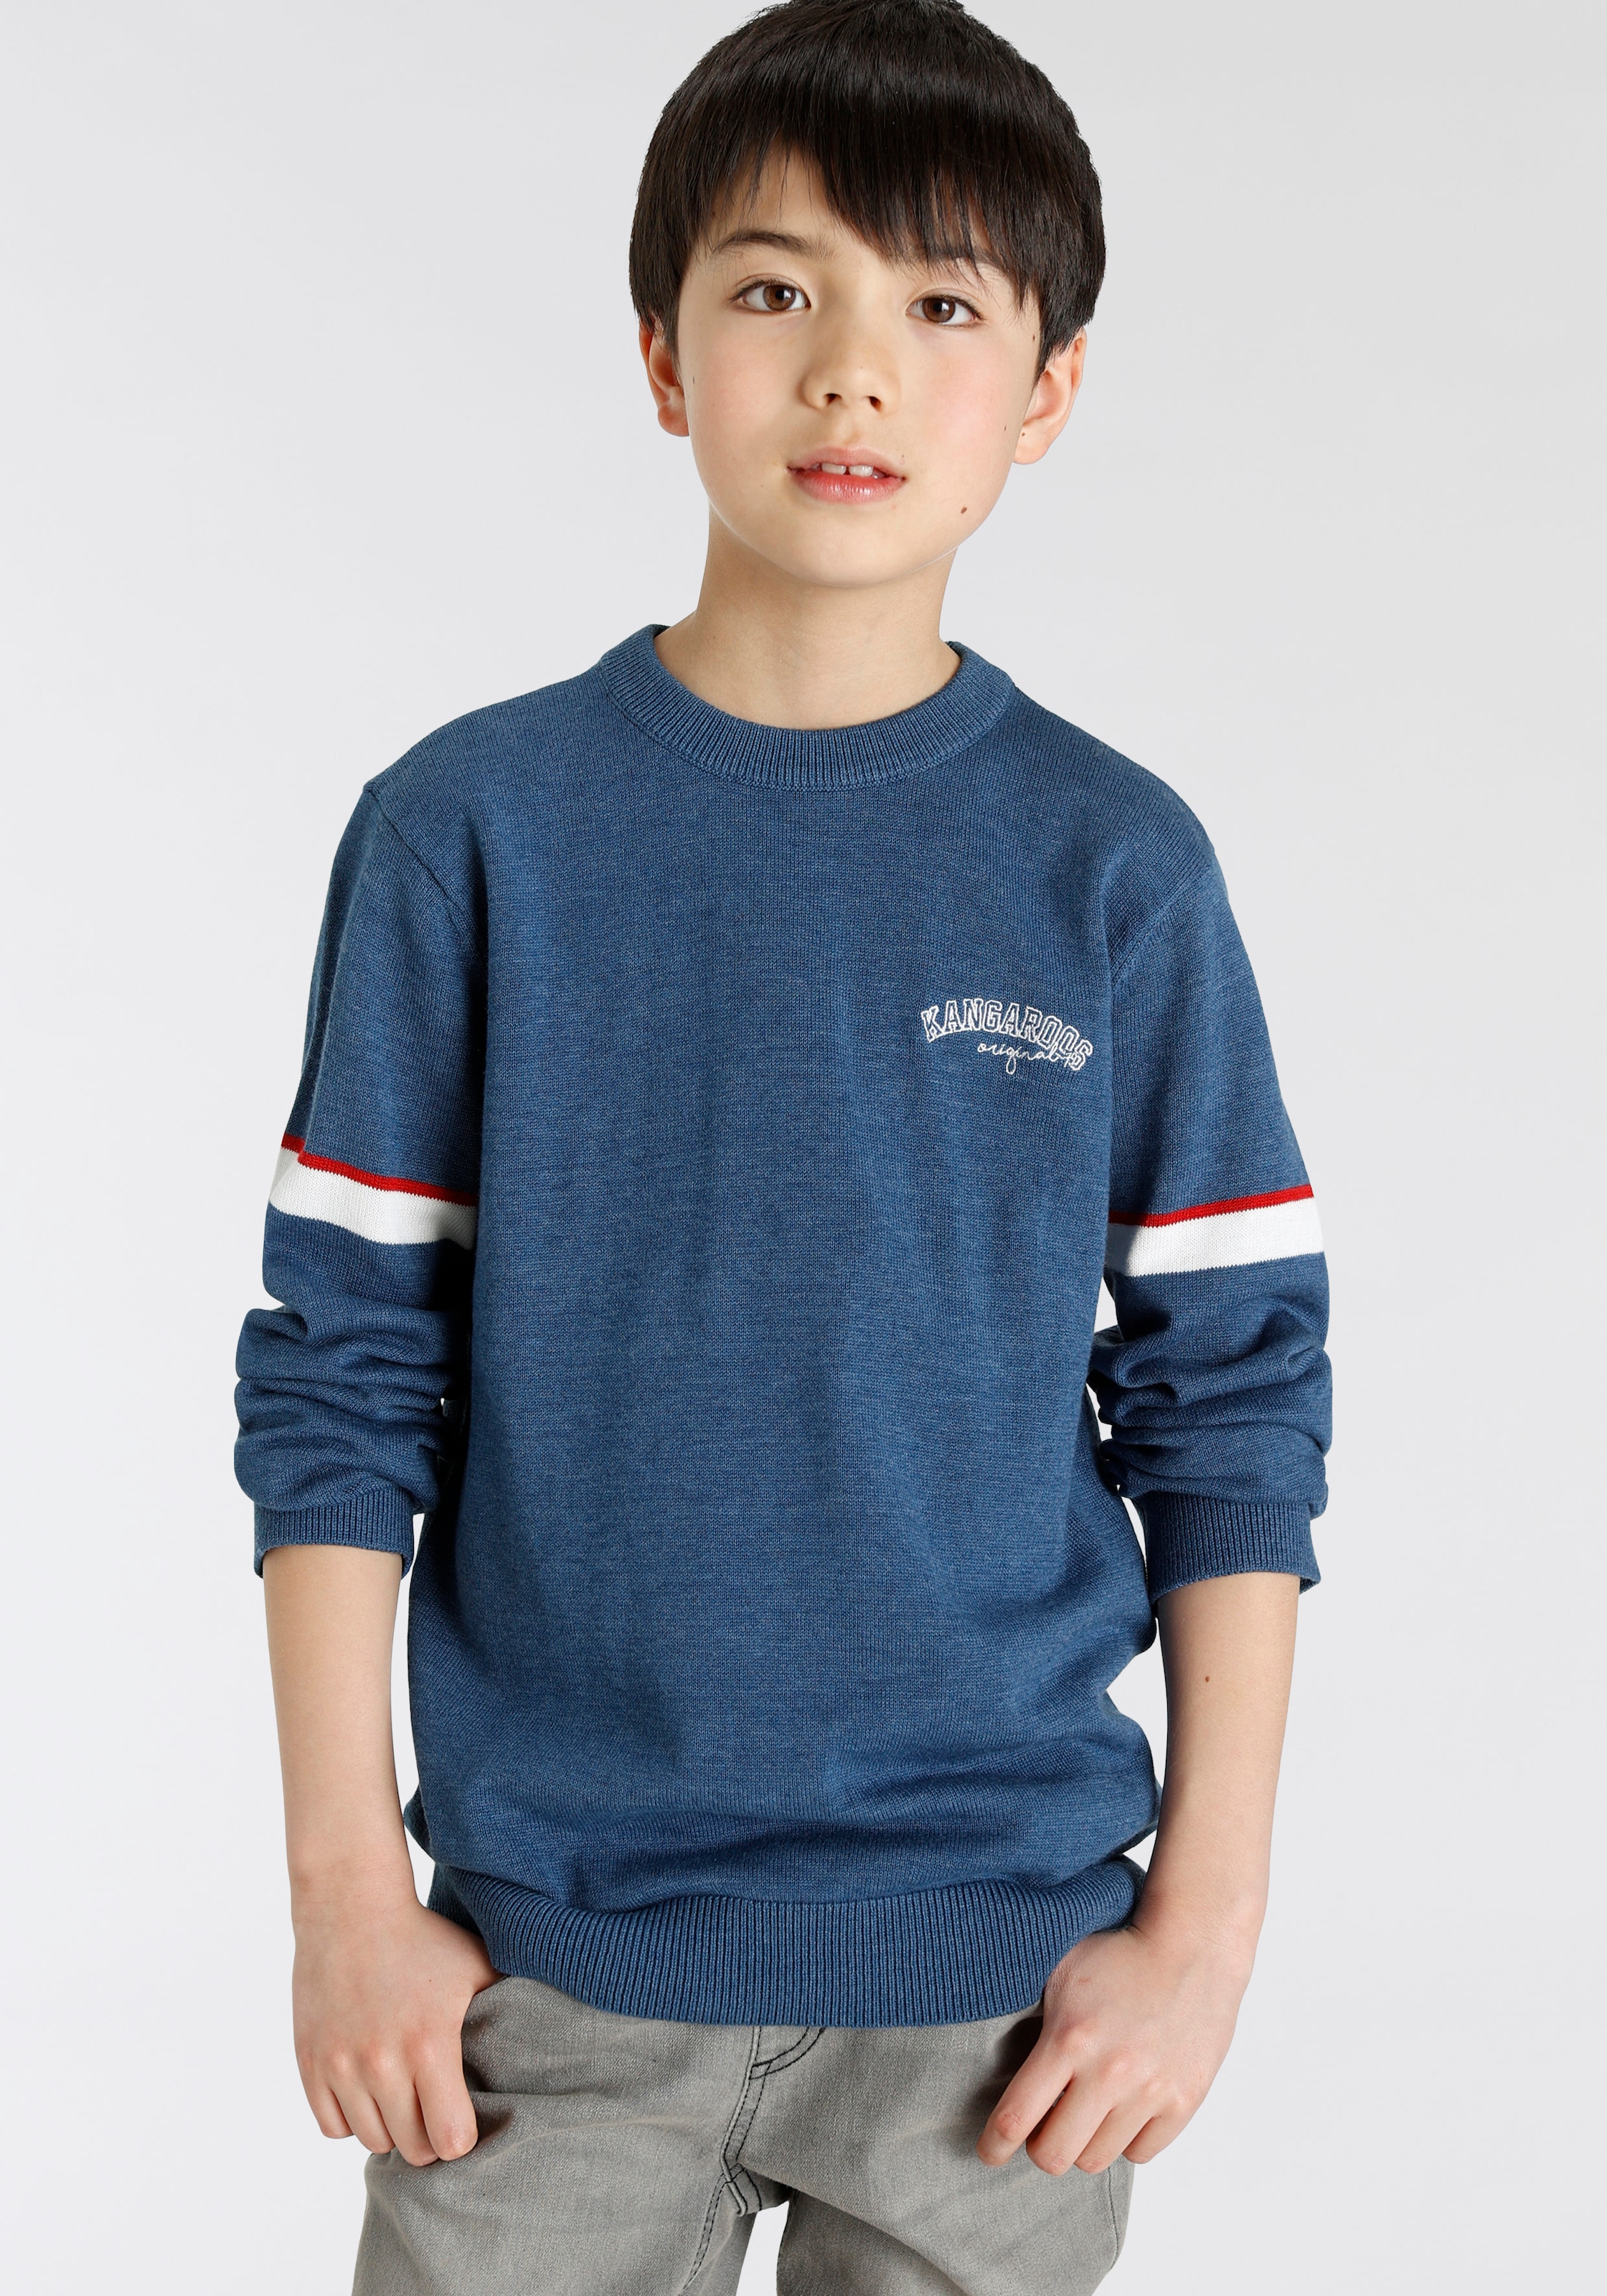 Pullover für Jungen online kaufen | BAUR